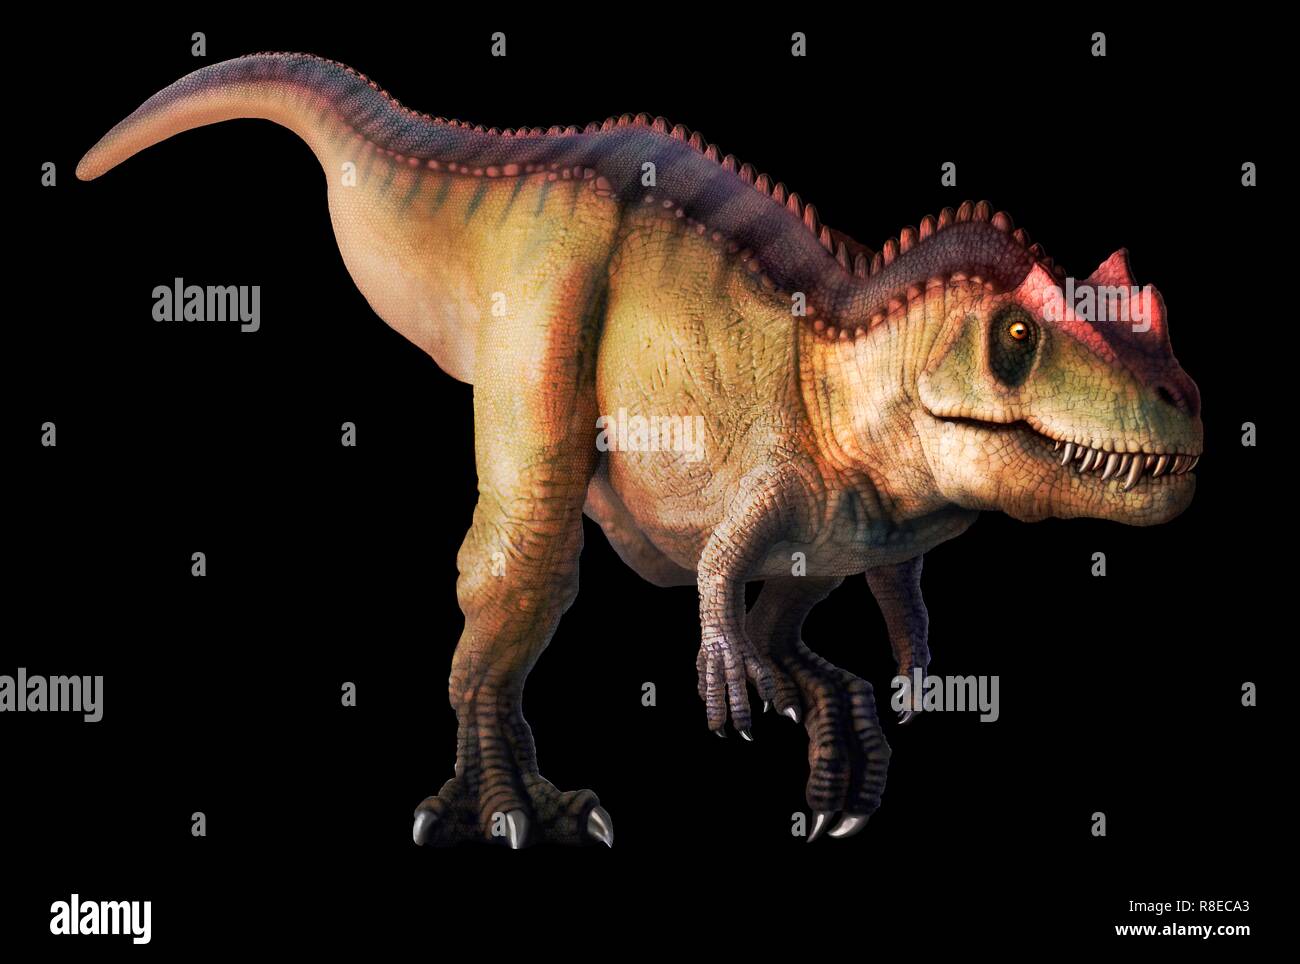 Ceratosaurus, illustration. Ce grand dinosaure théropode carnivore vivait pendant le Jurassique tardif (153-148 millions d'années) en ce qui est maintenant l'Amérique du Nord. Il atteint une longueur de 6 à 7 mètres. Banque D'Images